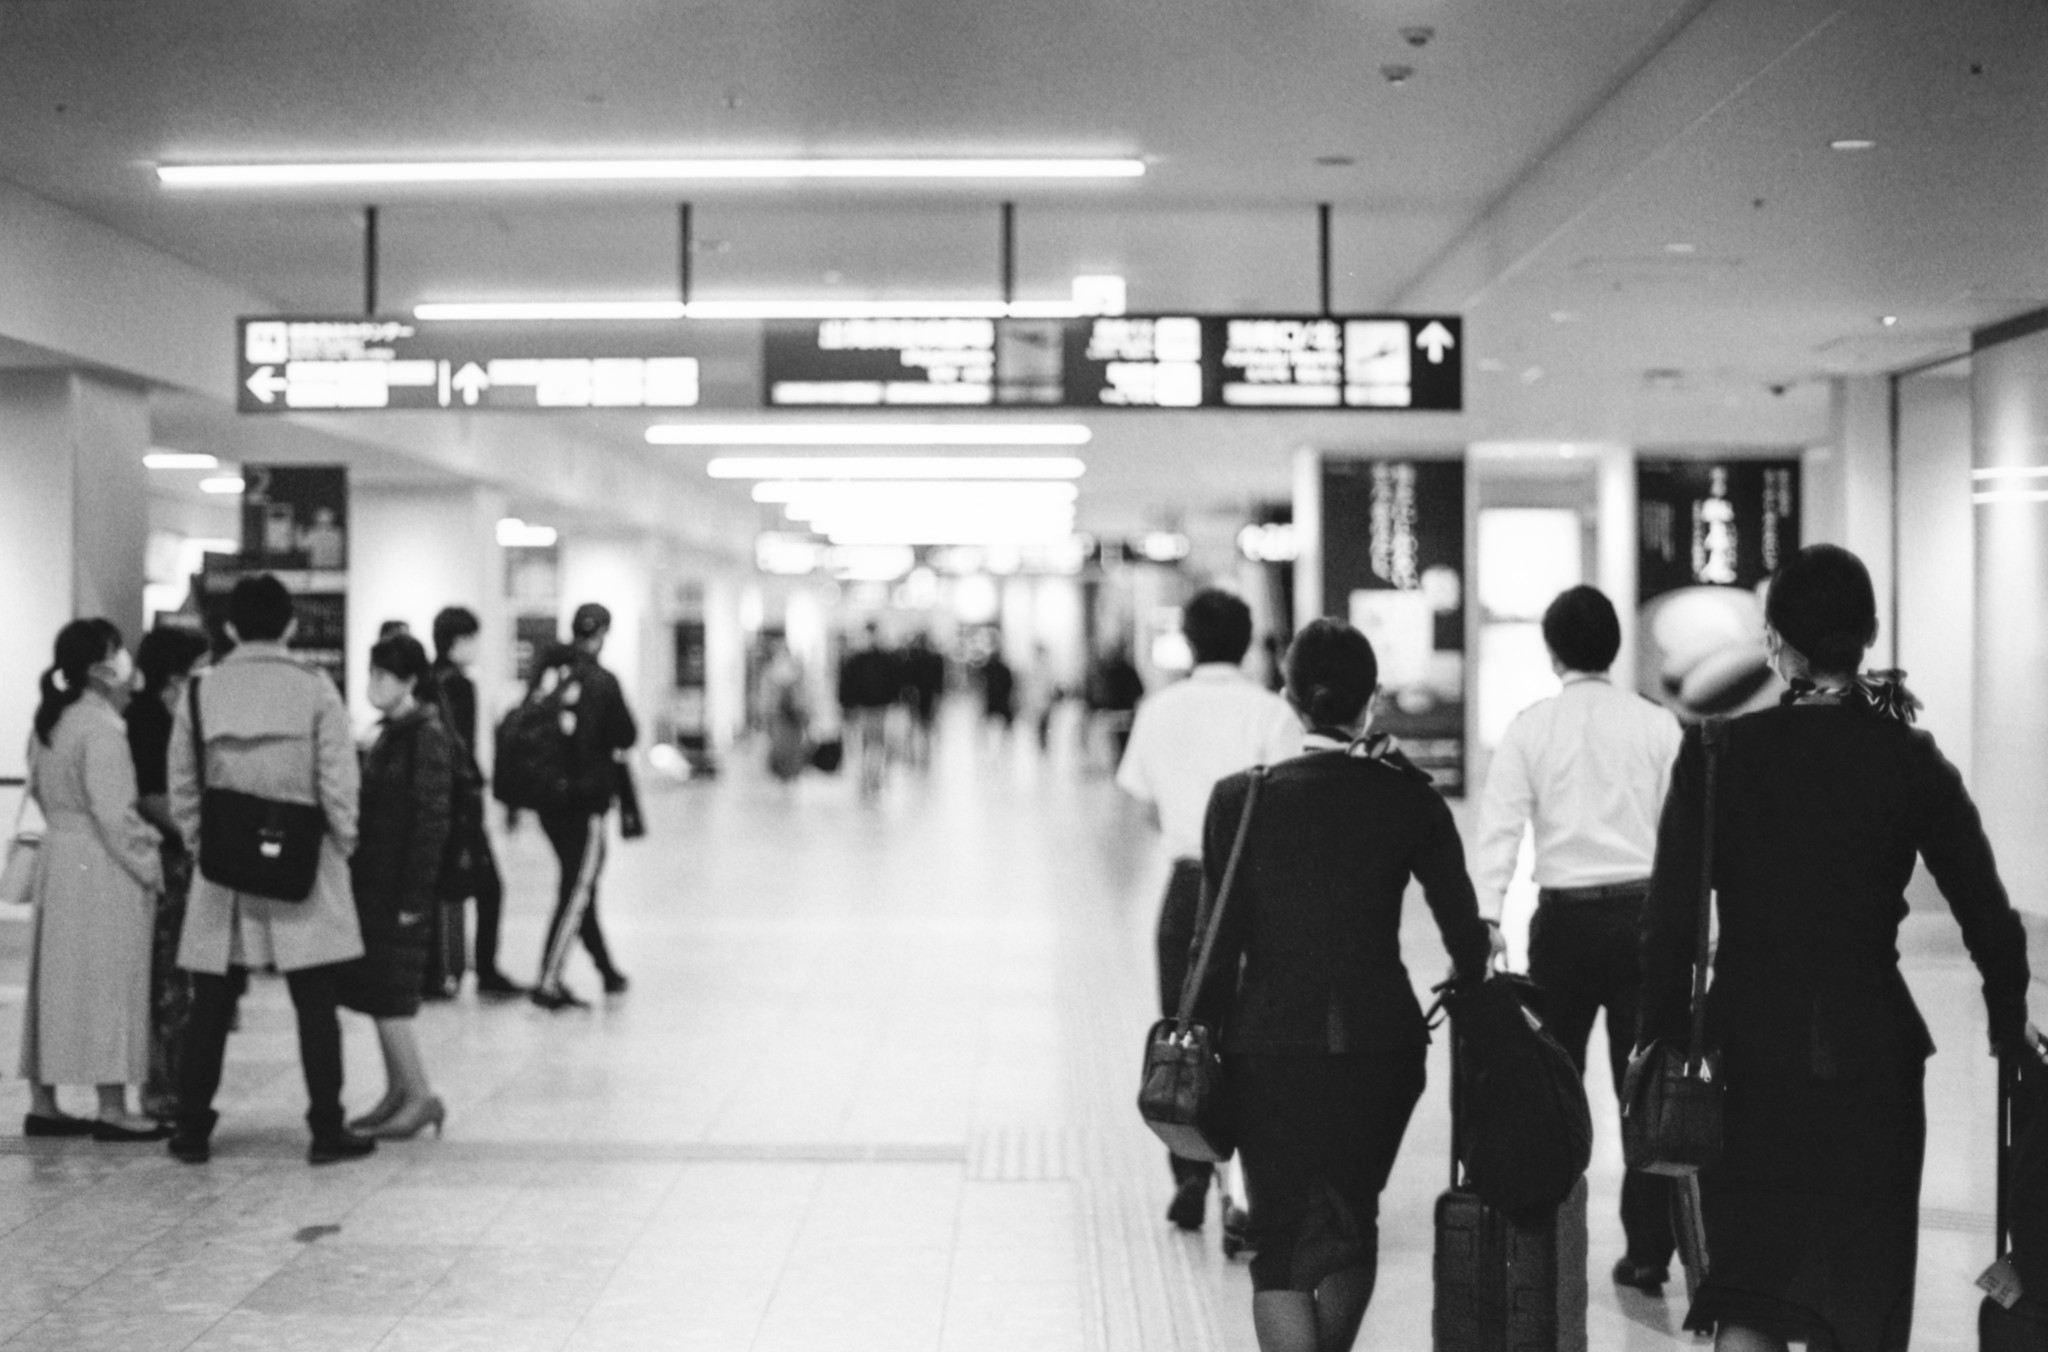 Des personnes marchant à l'intérieur d'un aéroport | Source : flickr.com